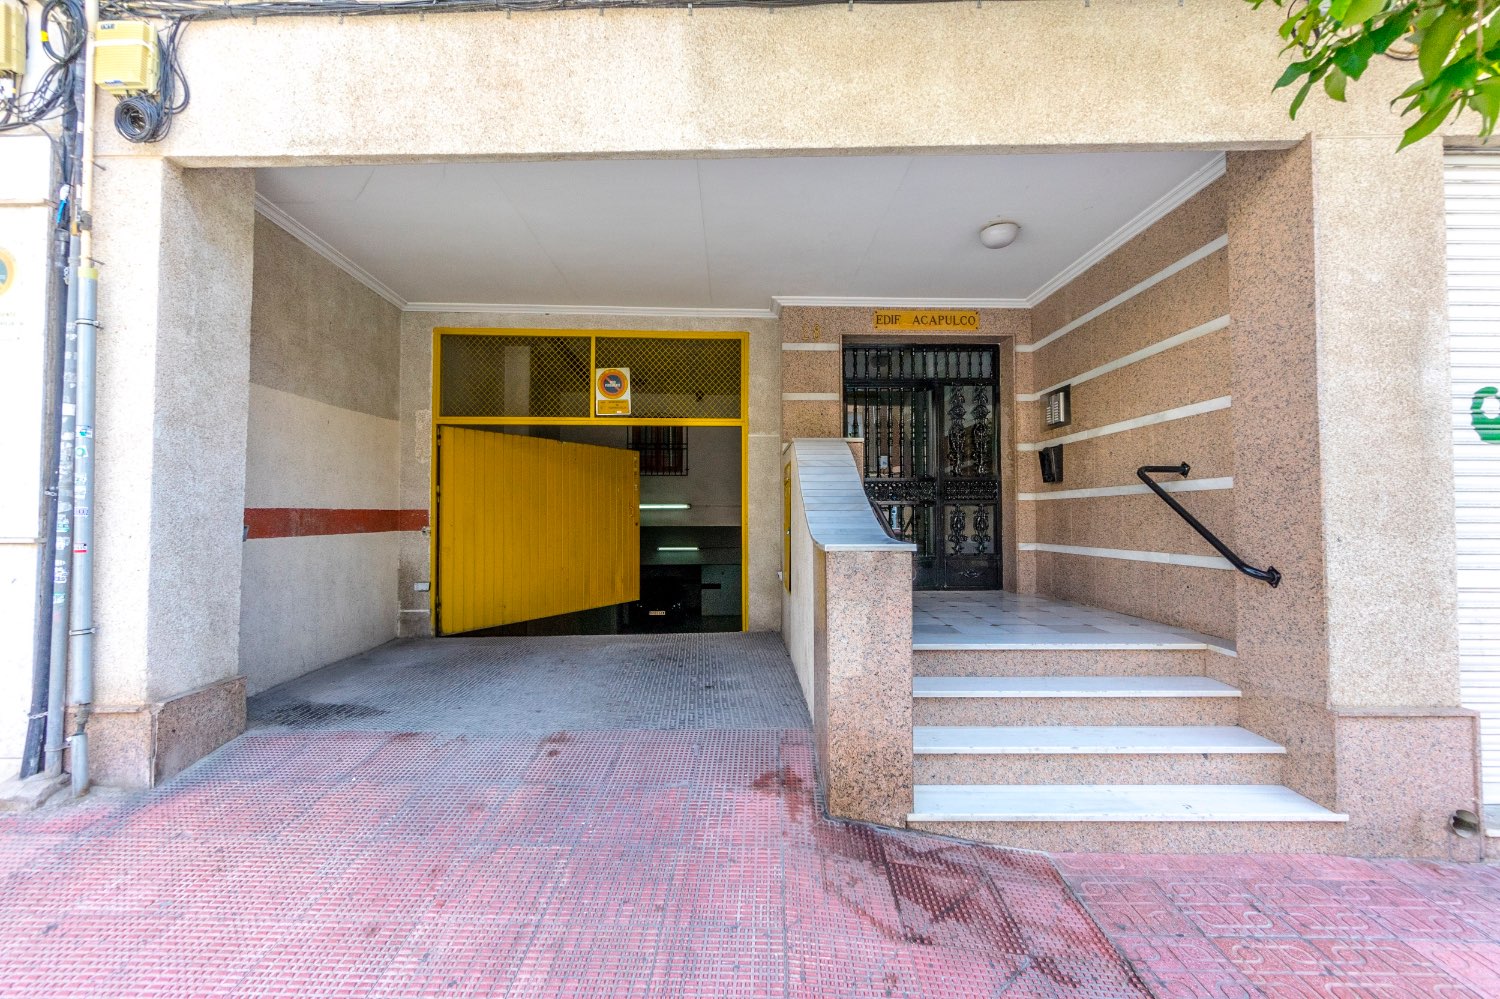 Estupendo apartamento reformado en el centro de Torrevieja con 2 dormitorios, 1 baño , plaza de garaje y trastero!